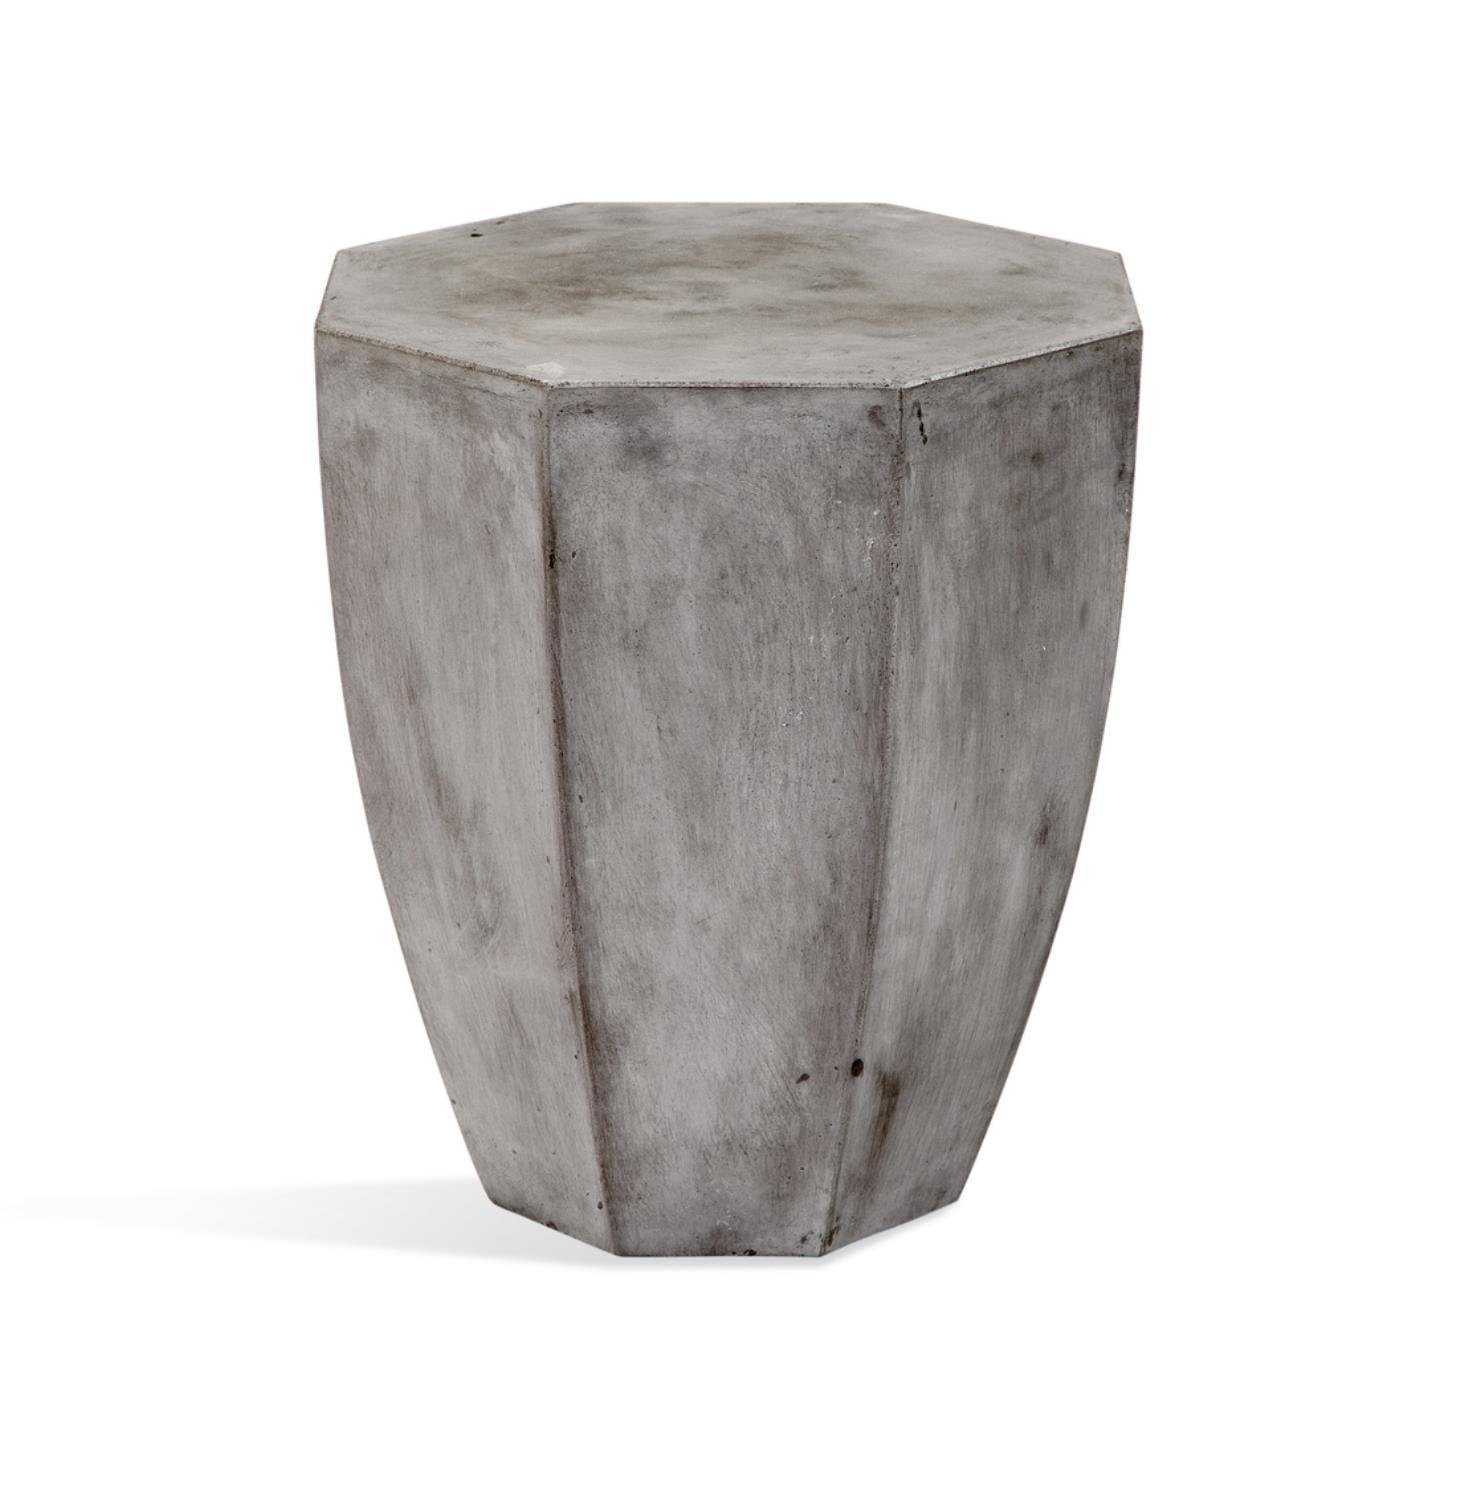 Babalou Gray Concrete Octagonal Sculptural End Table